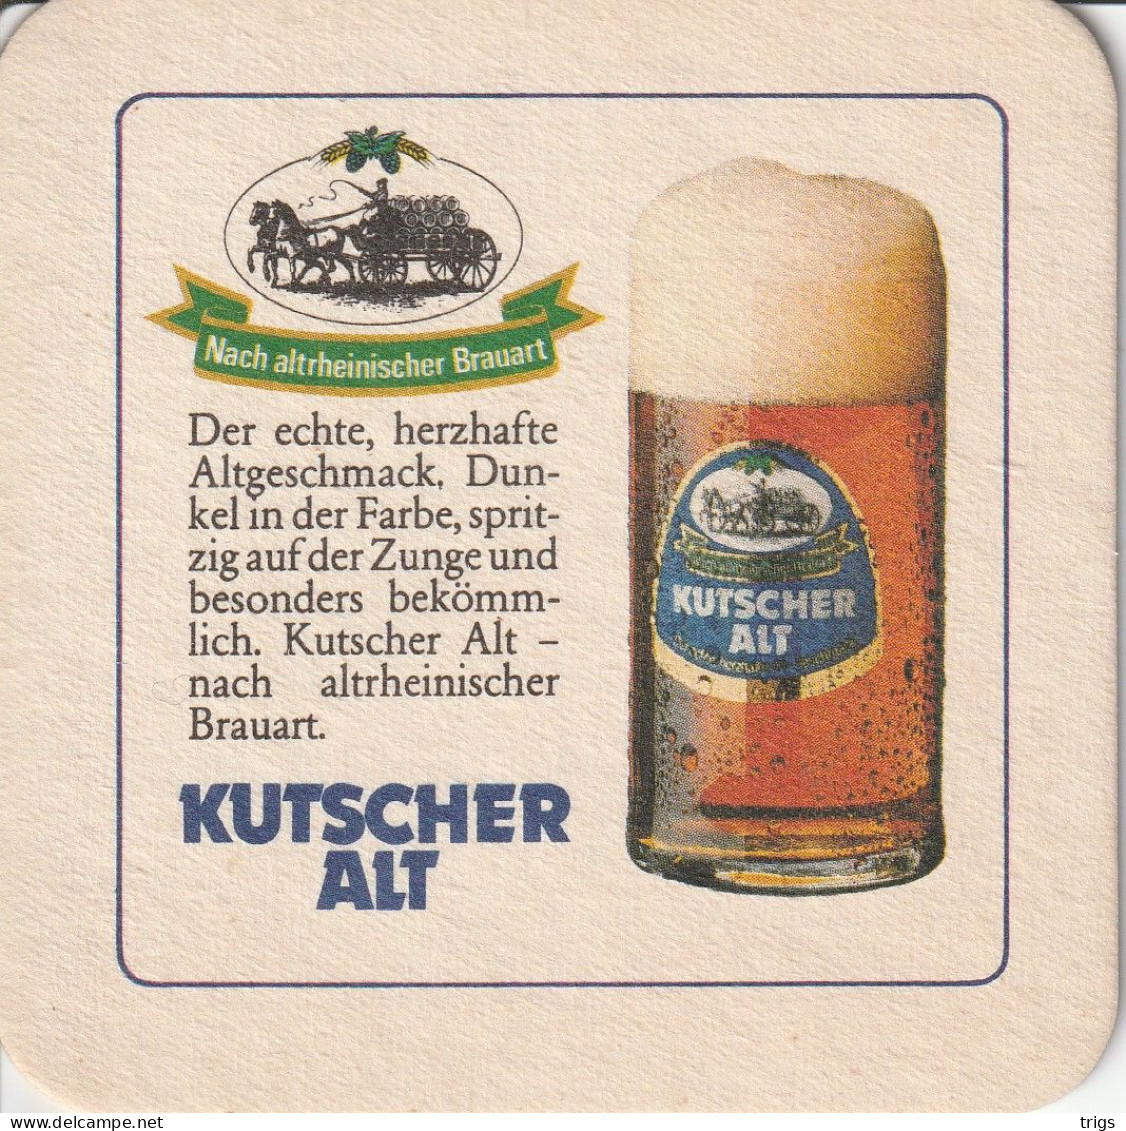 Kutscher Alt - Sotto-boccale